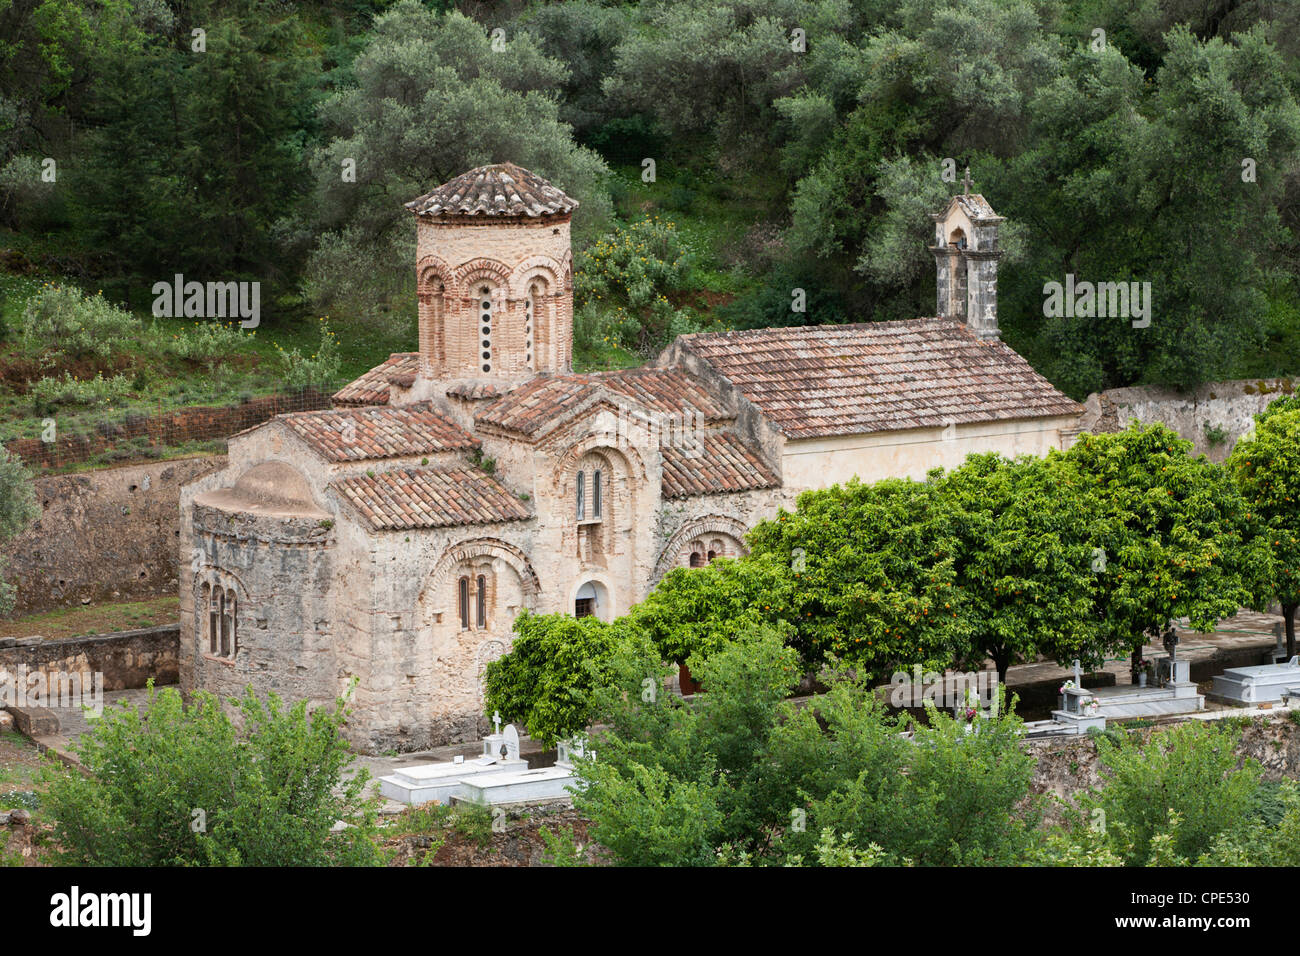 Ayios Nikolaos Byzantine church, près de Samonas, Montagnes Blanches (Lefka Ori), région de La Canée, Crète, îles grecques, Grèce, Europe Banque D'Images